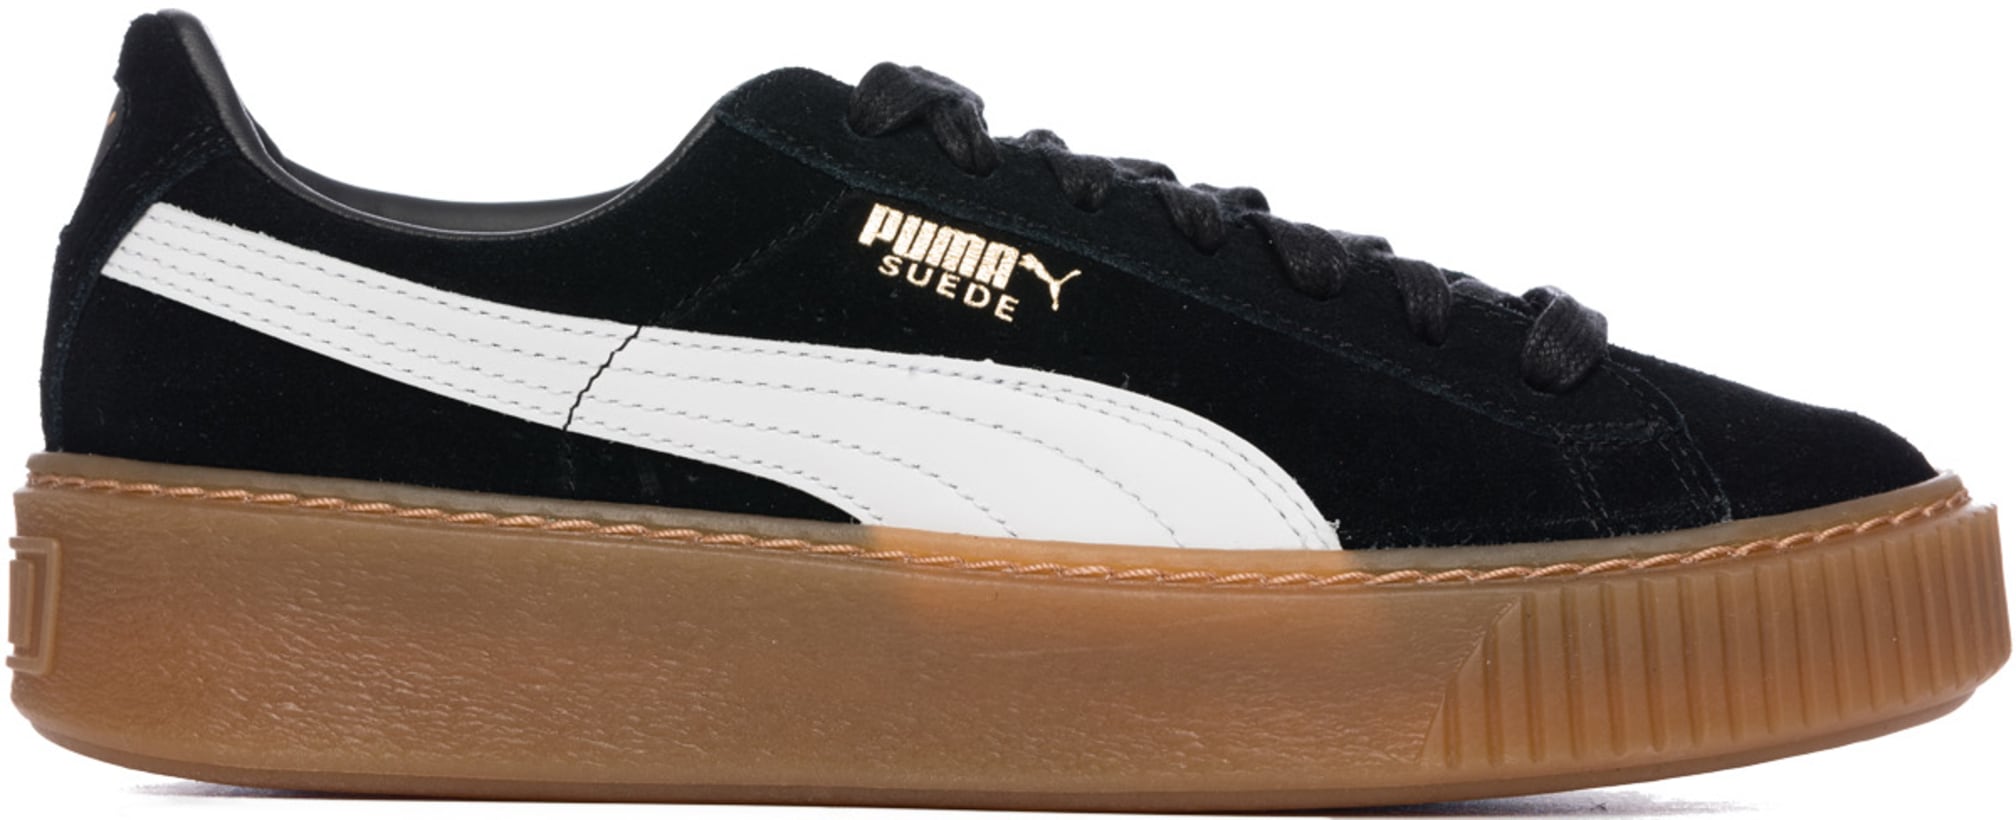 Puma: Suede Platform Core - Puma Black/White | influenceu